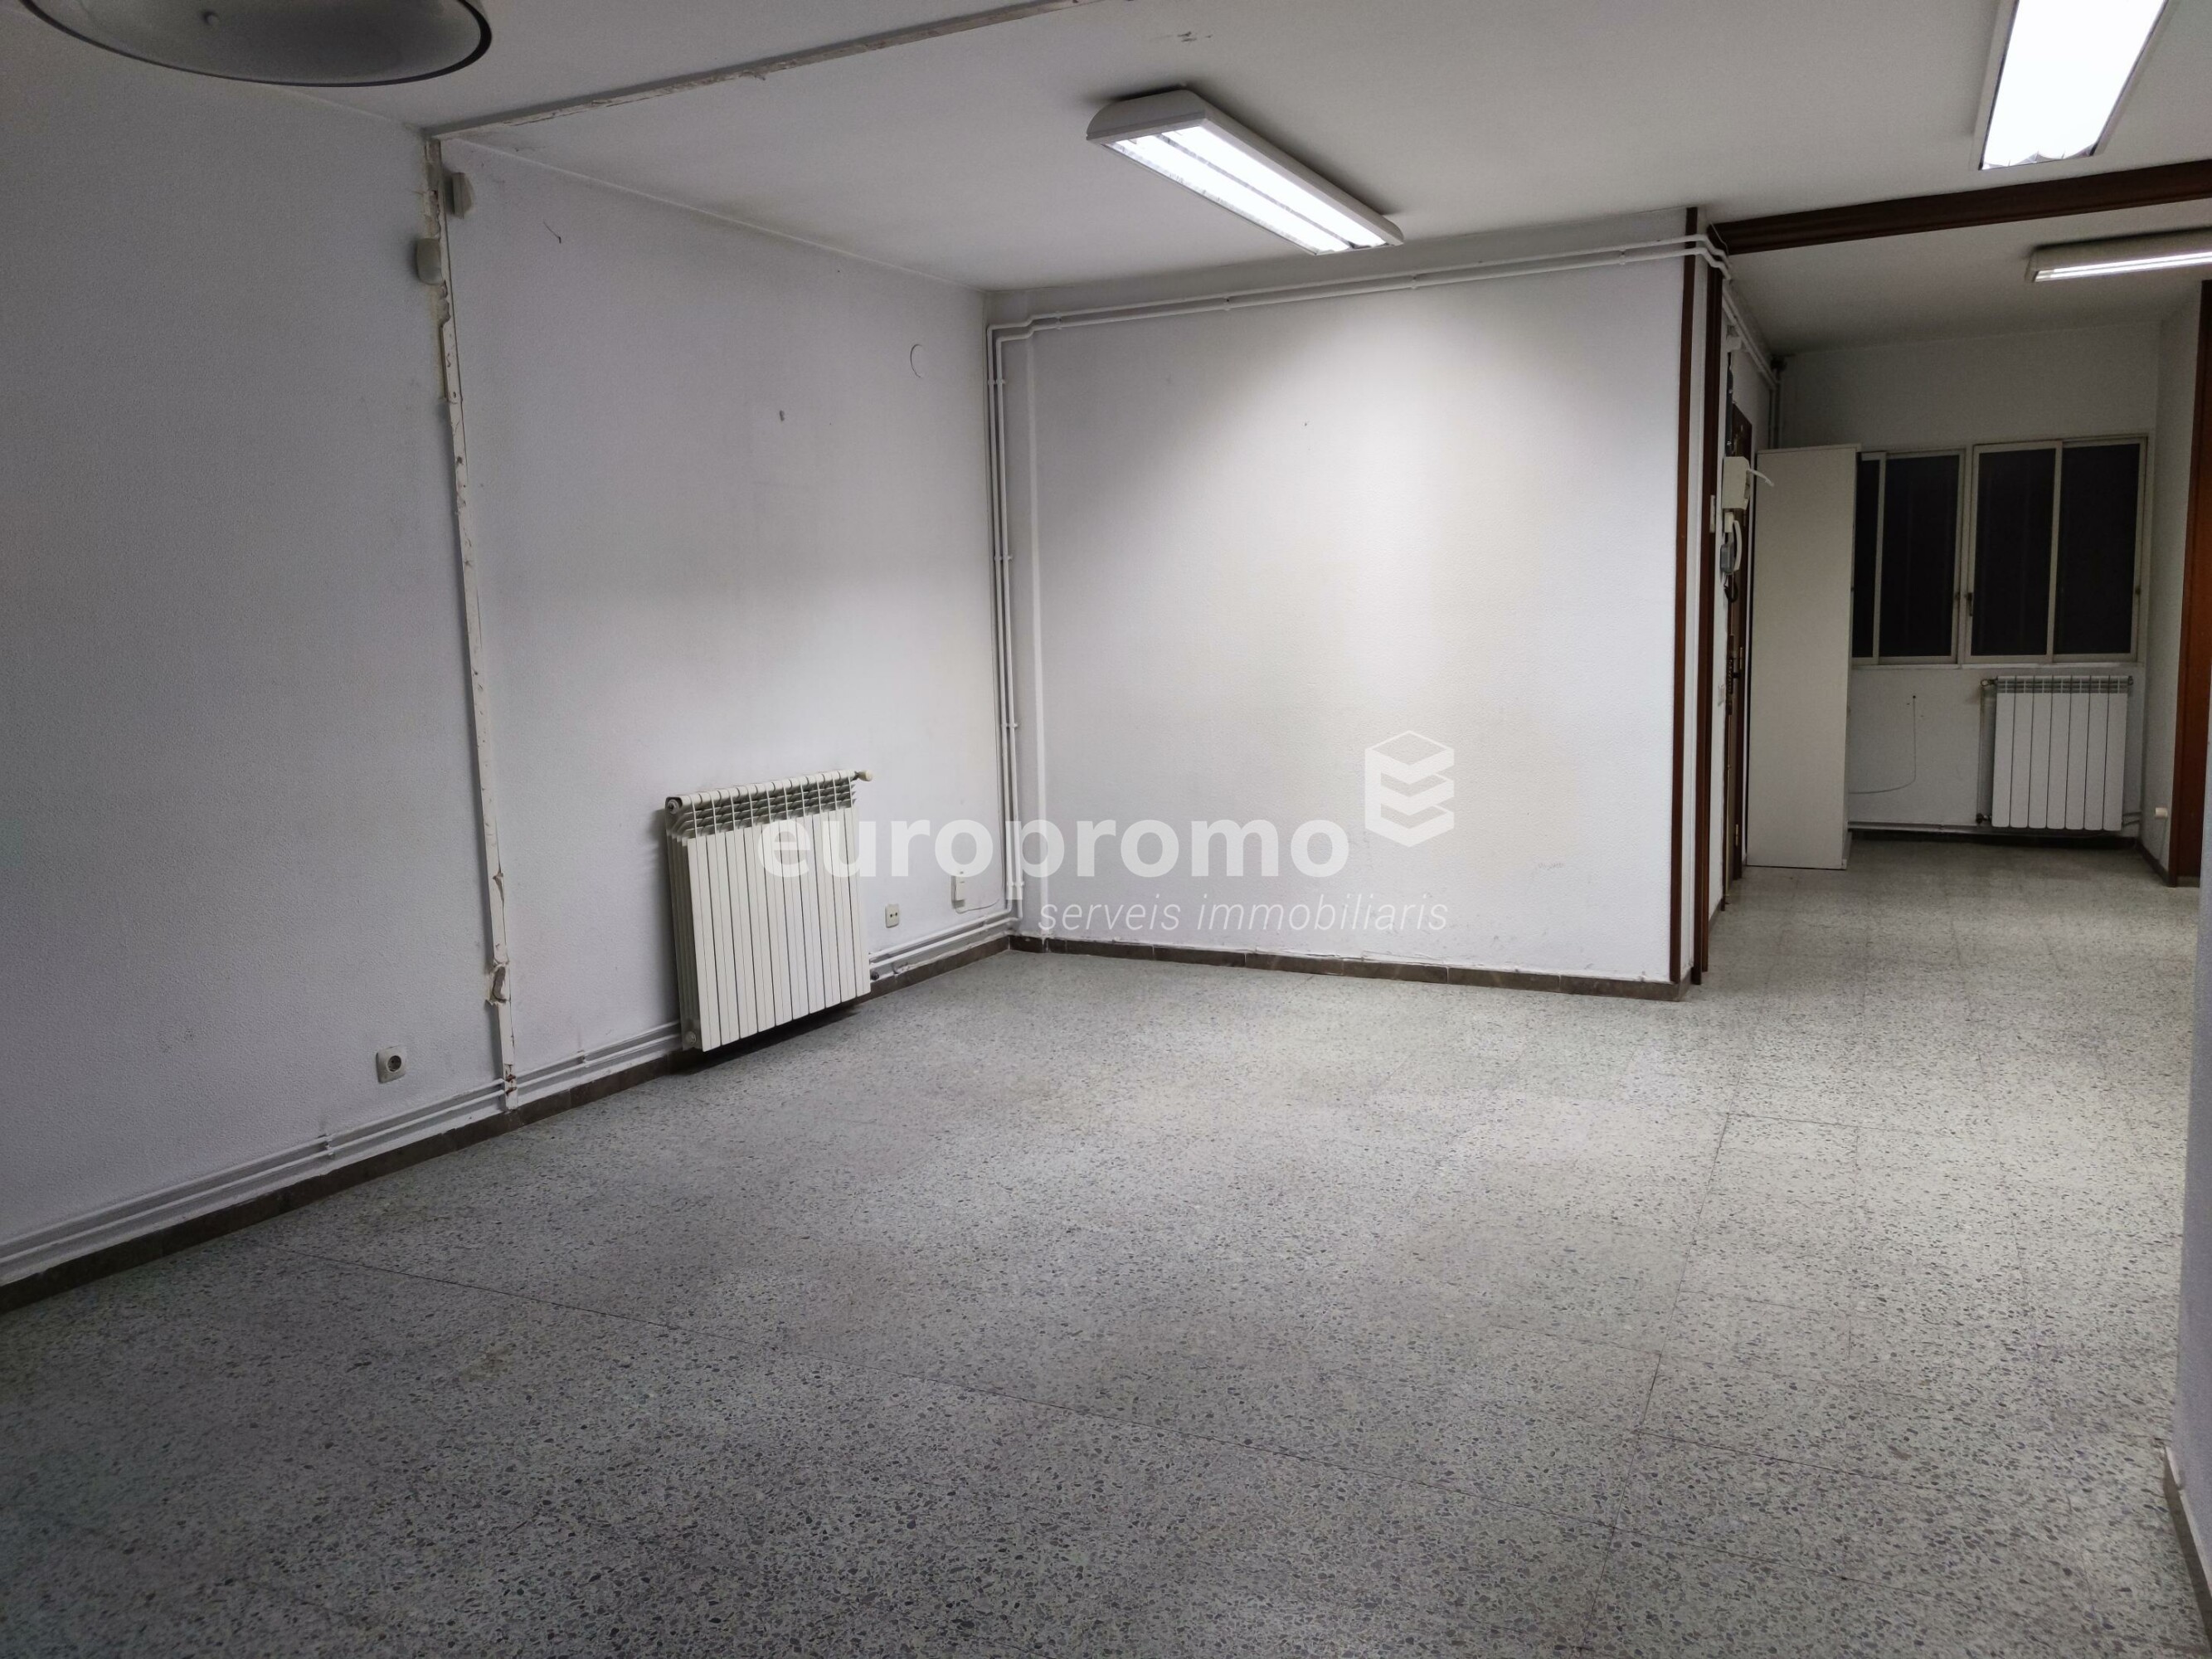 Oficina de 60 m2 en el centre de Girona- Jaume I